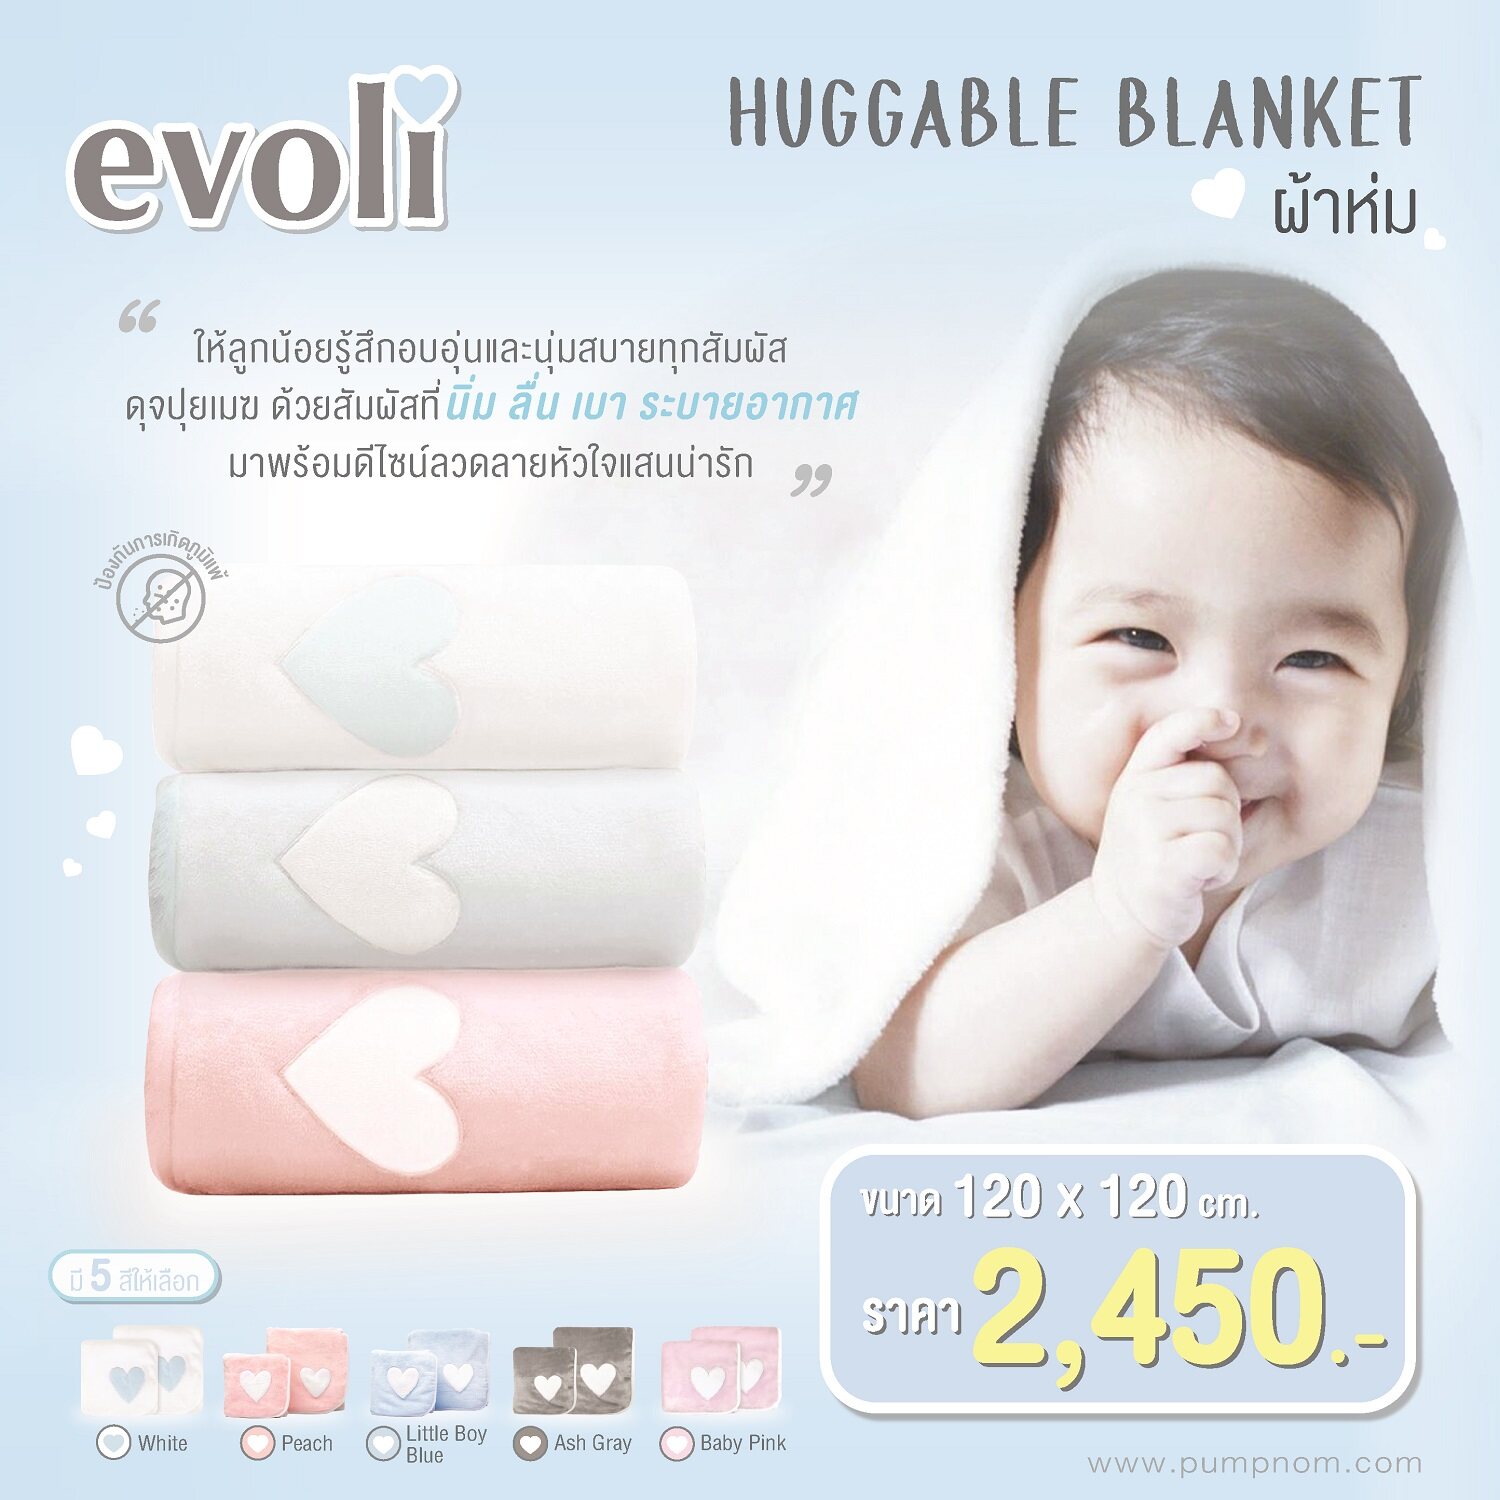 EVOLI (อิโวลี่) HUGGABLE BLANKET ผ้าห่มขนาด 120 X 120 CM. ผู้เป็นภูมิแพ้สามารถใช้ได้